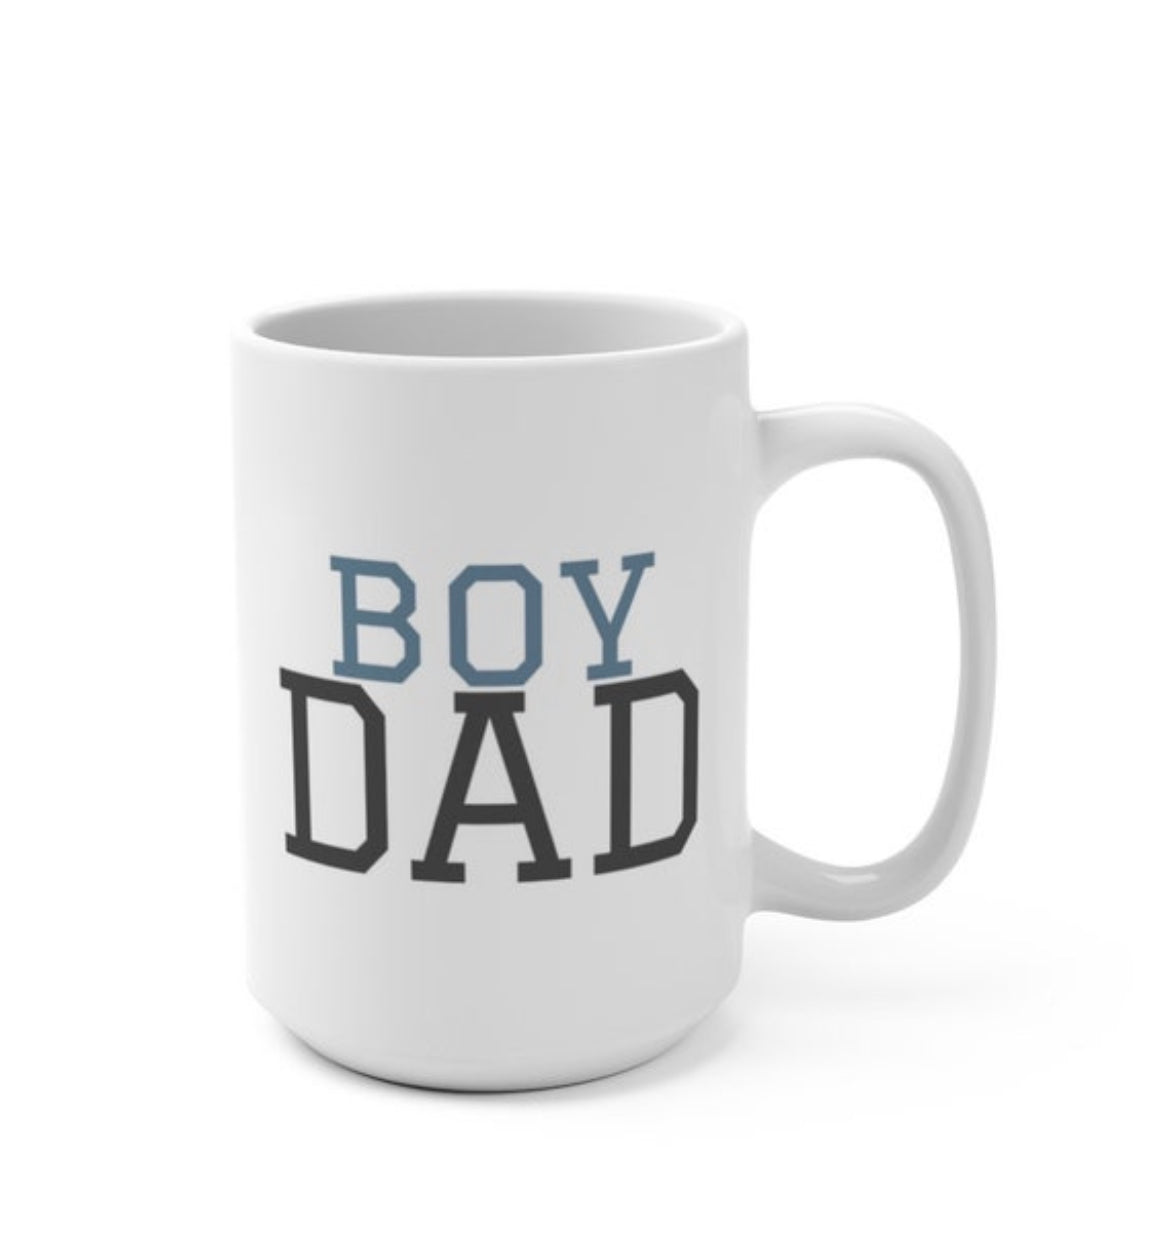 Boy Dad 15oz Ceramic Coffee Mug